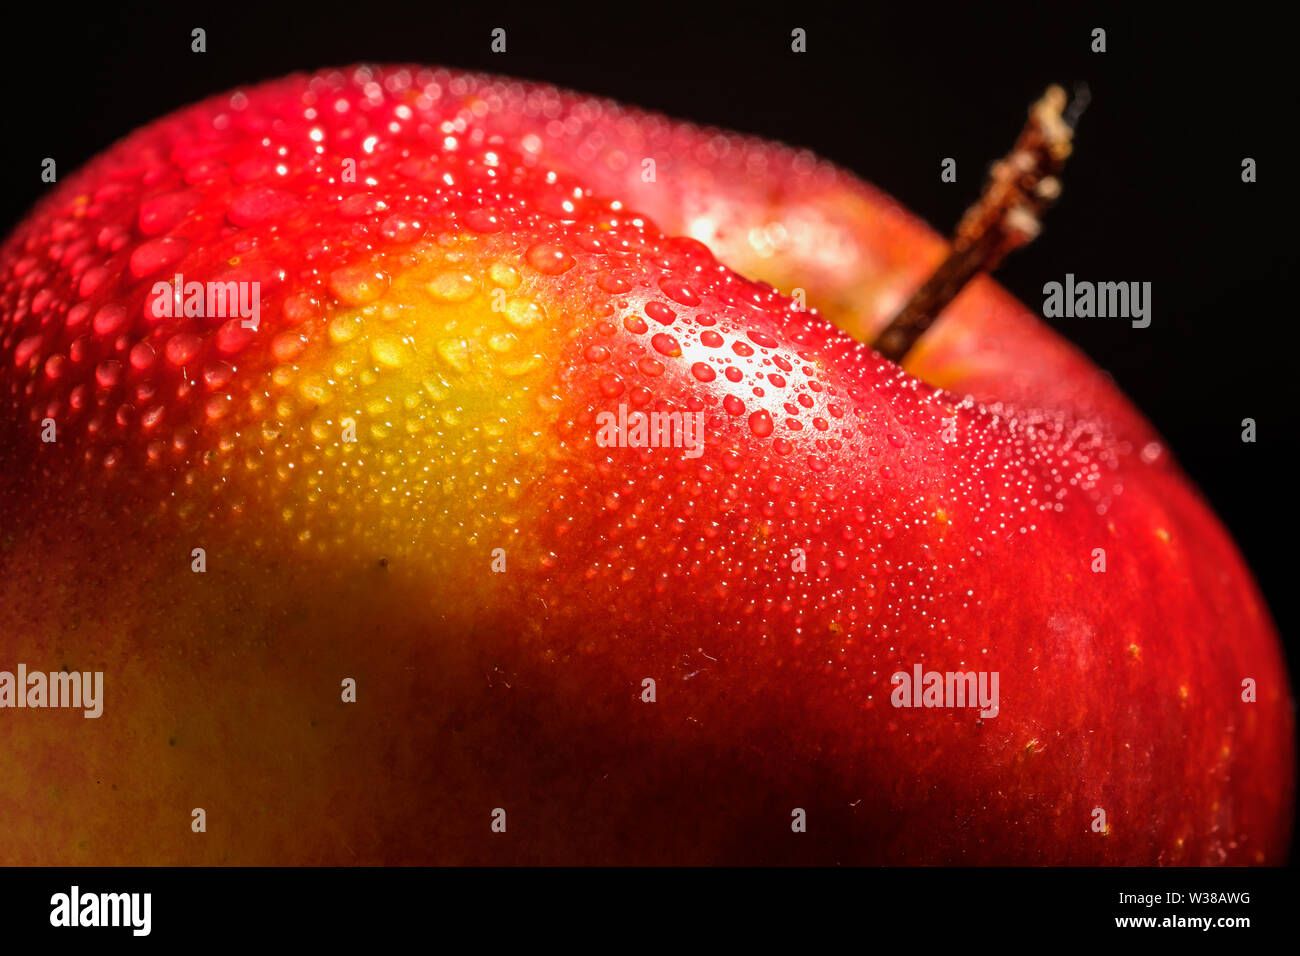 Red Apple close-up avec des gouttes d'eau Banque D'Images